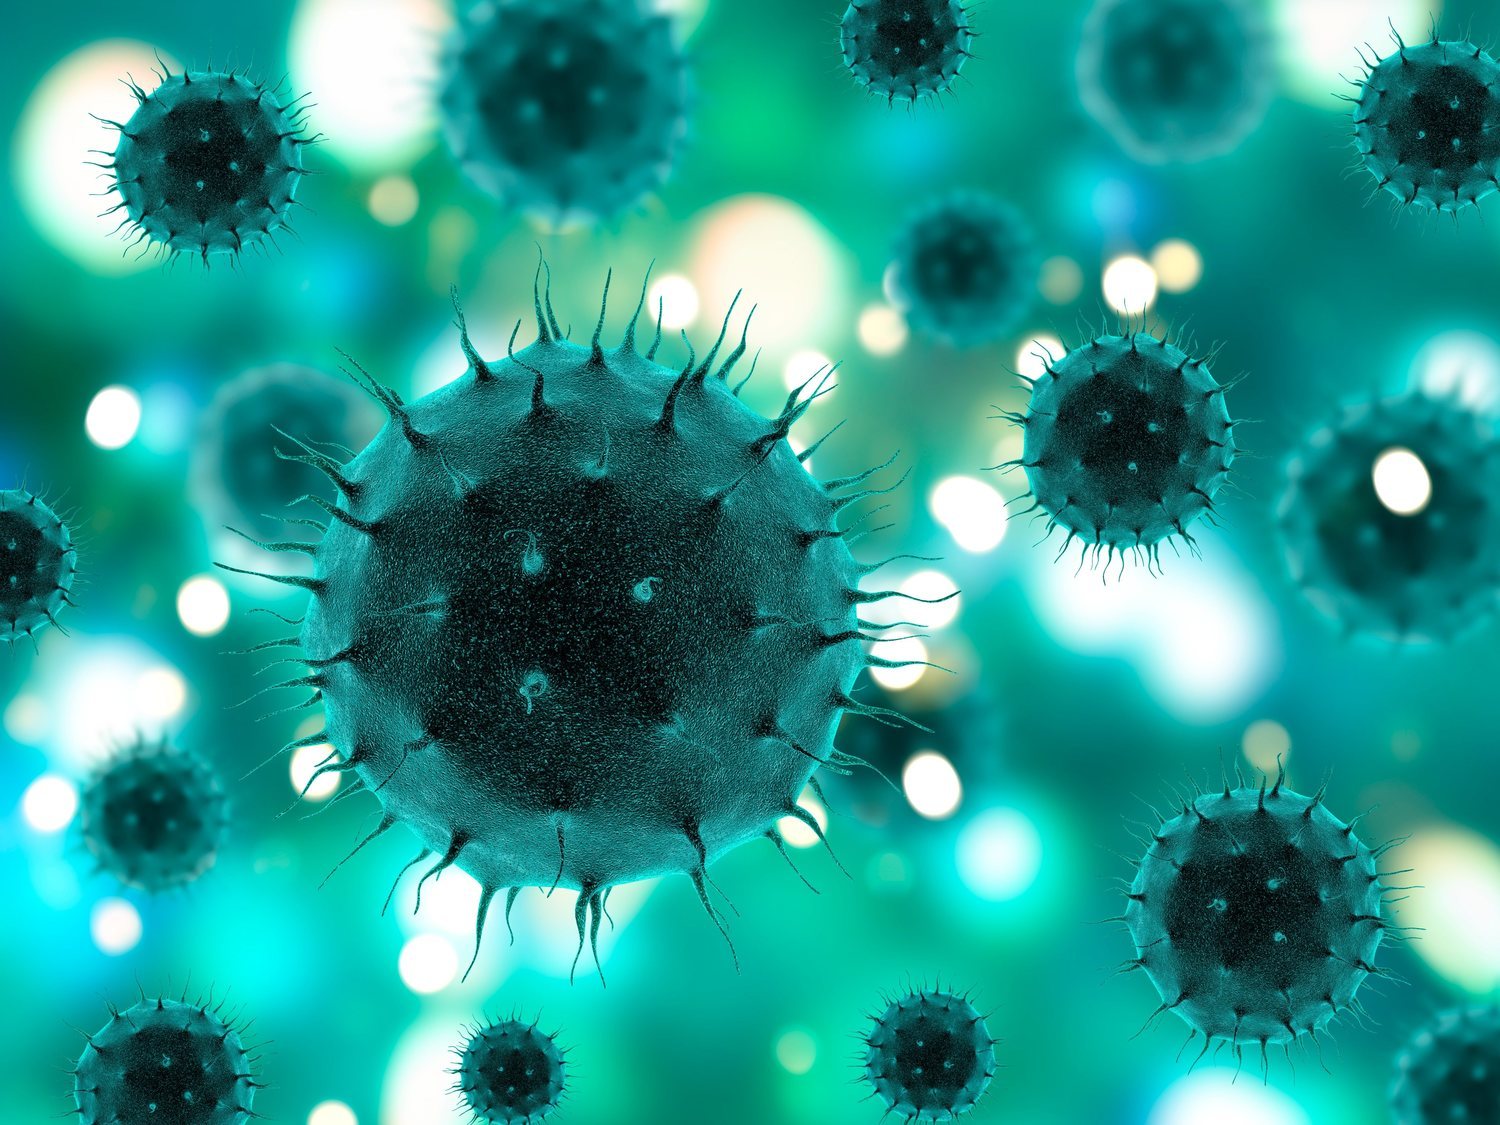 'La cumbia del coronavirus': la polémica canción viral que genera todo tipo de comentarios